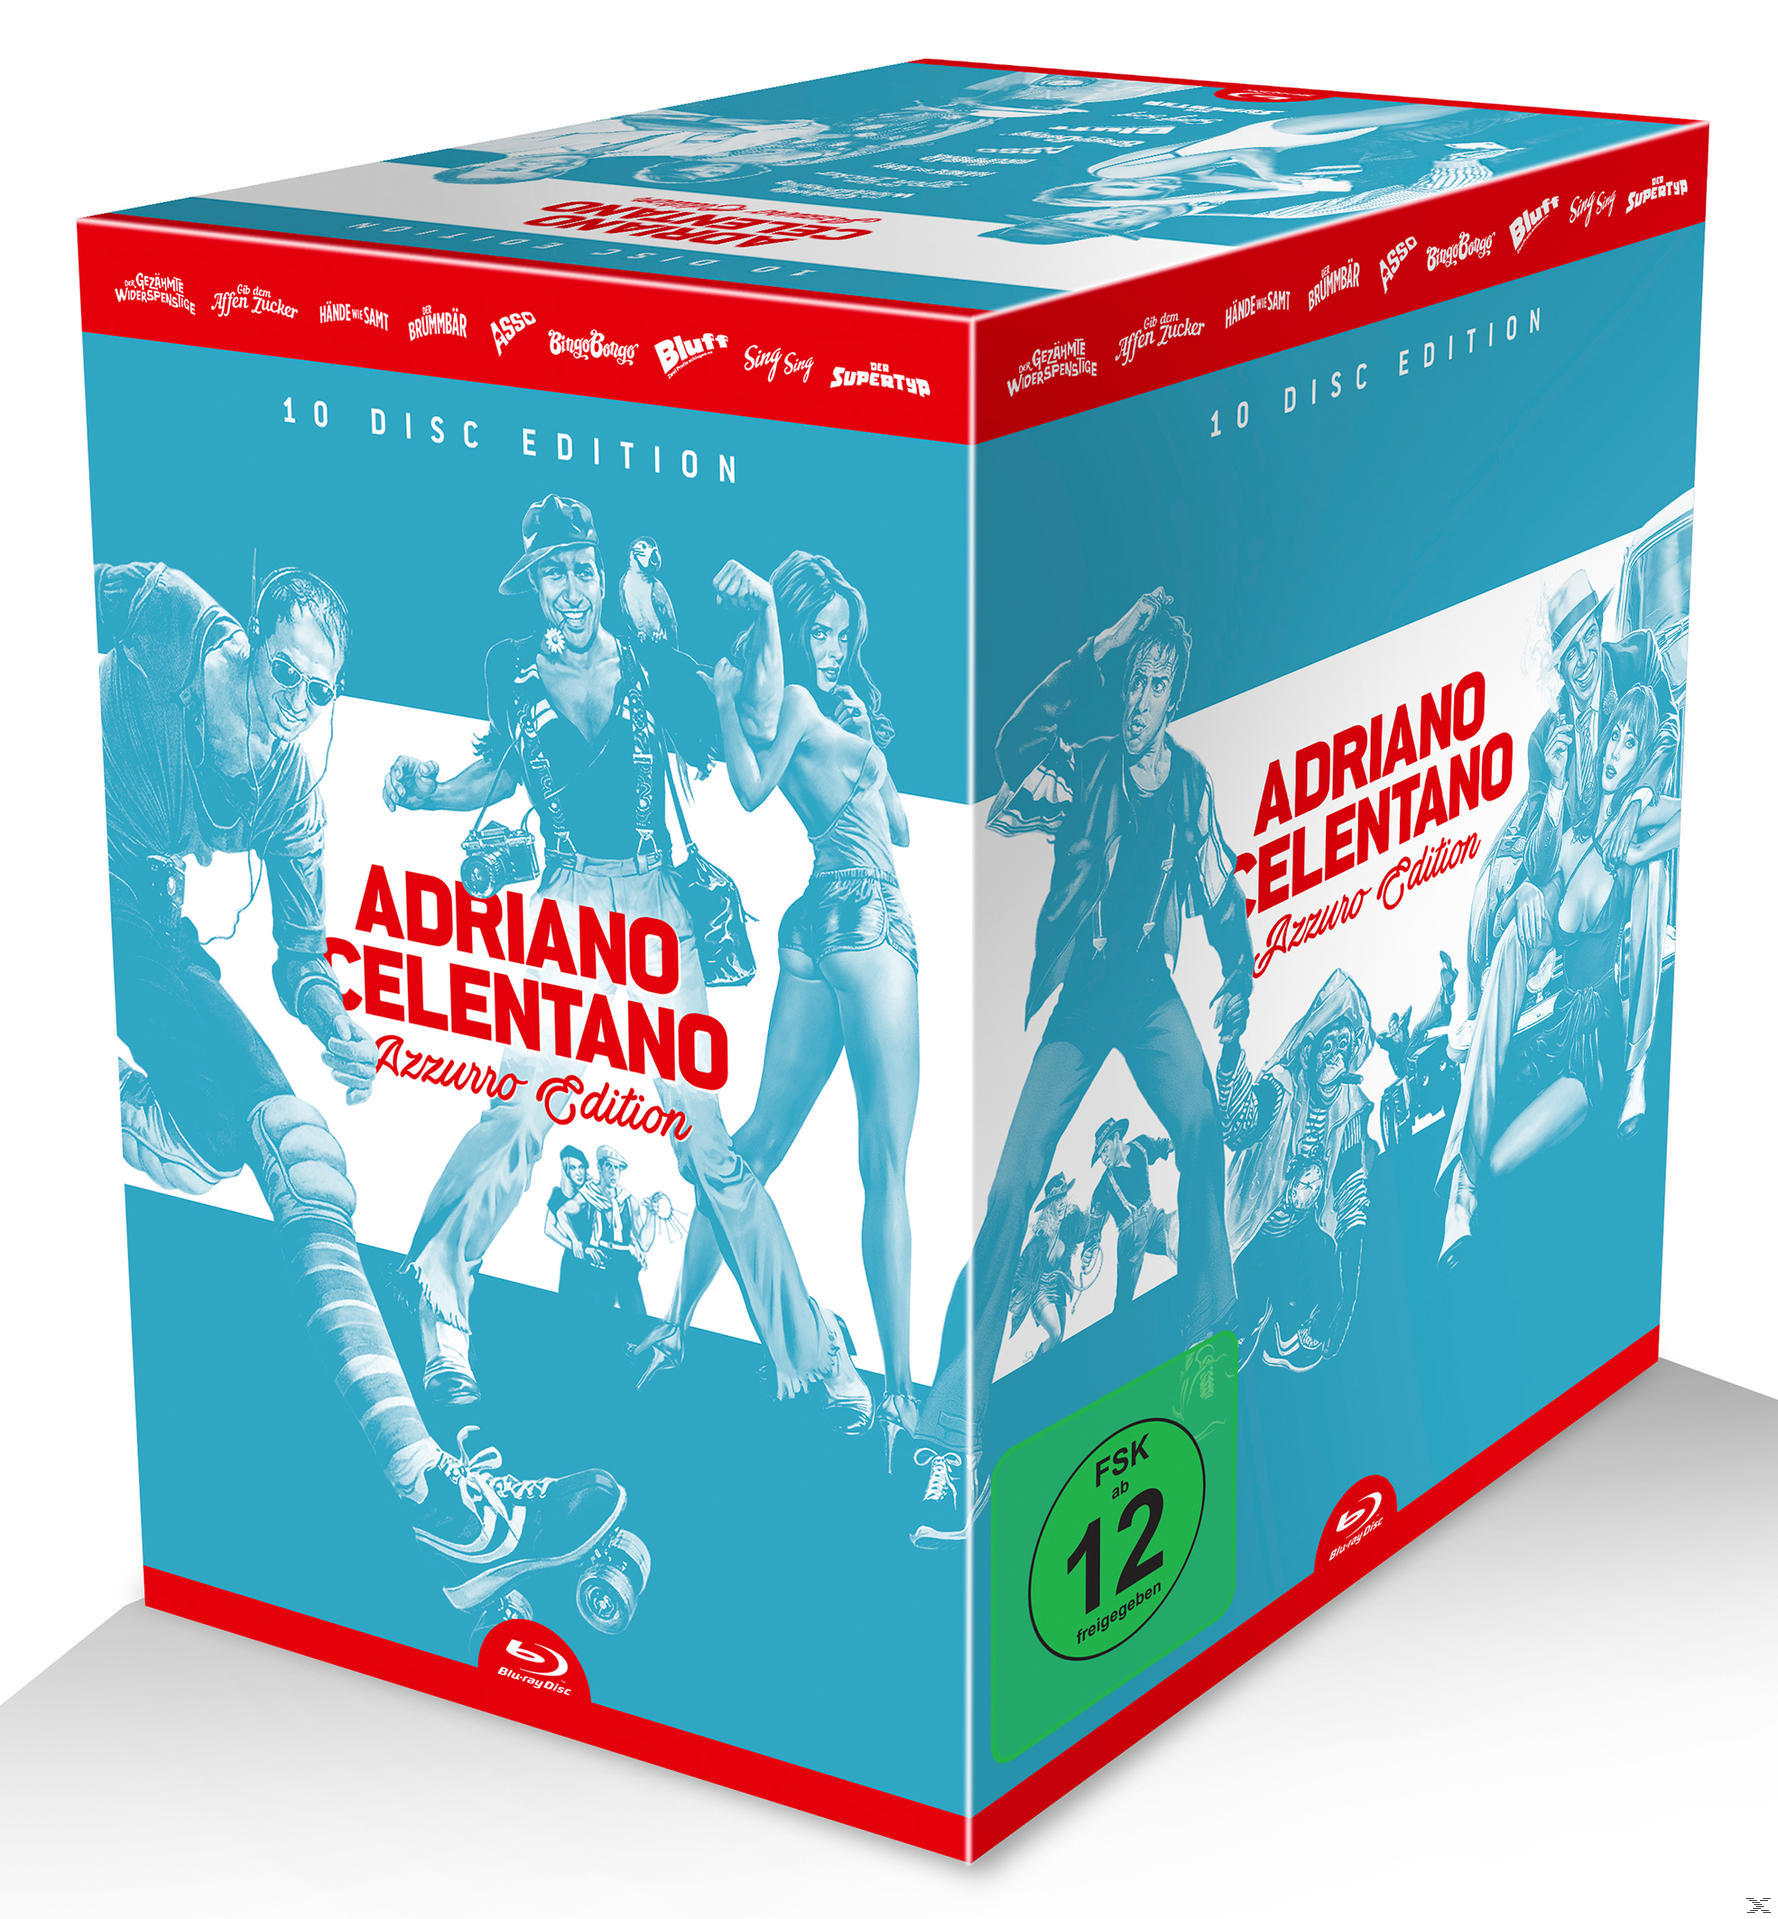 Adriano Celentano Azzurro-Edition Blu-ray